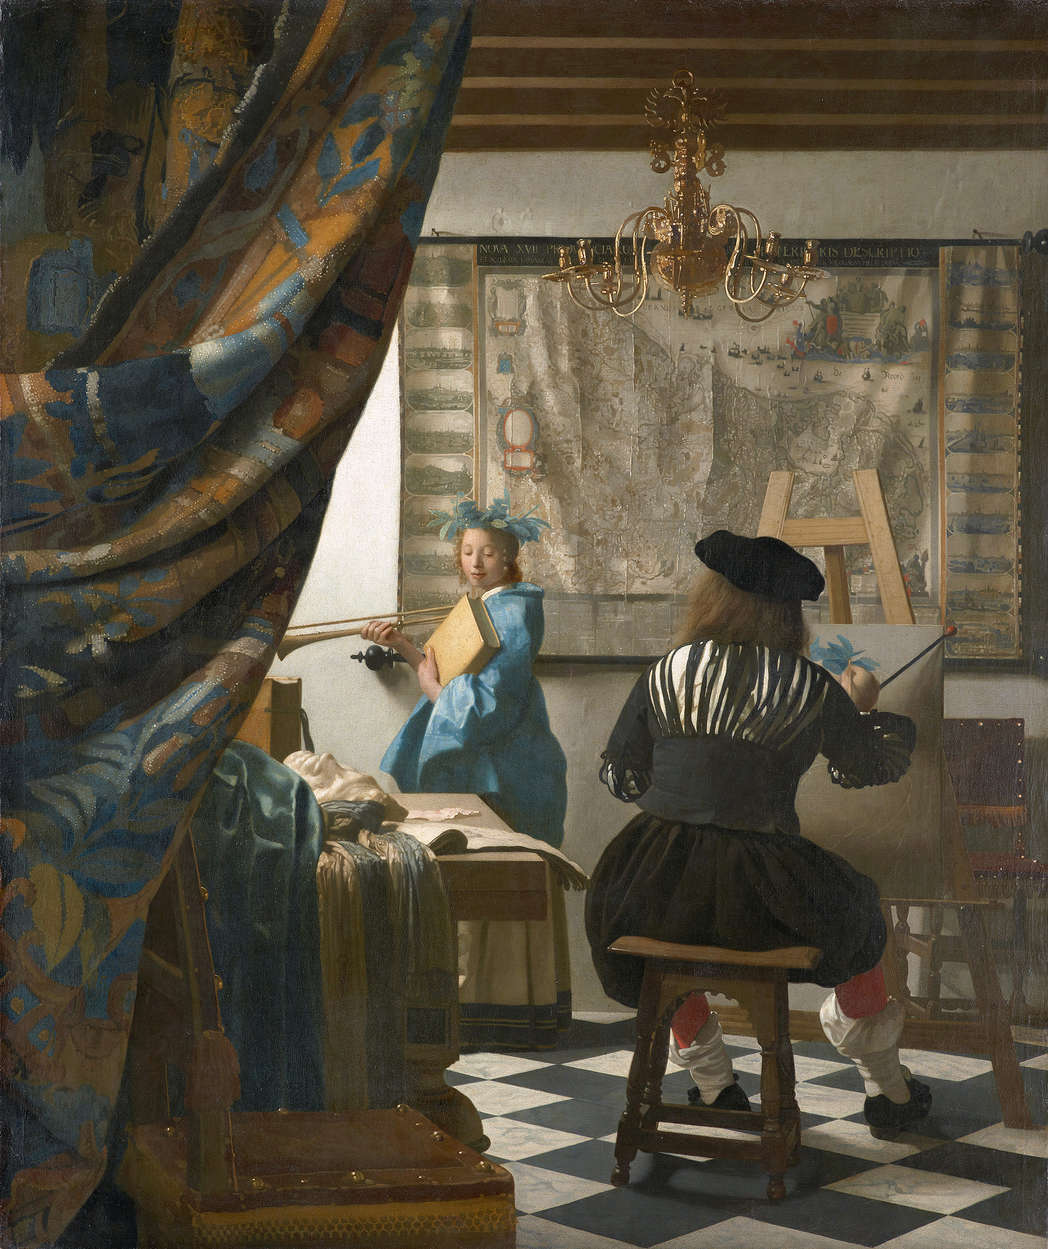             Photo wallpaper "Vermeer in his studio" by Jan Vermeer
        